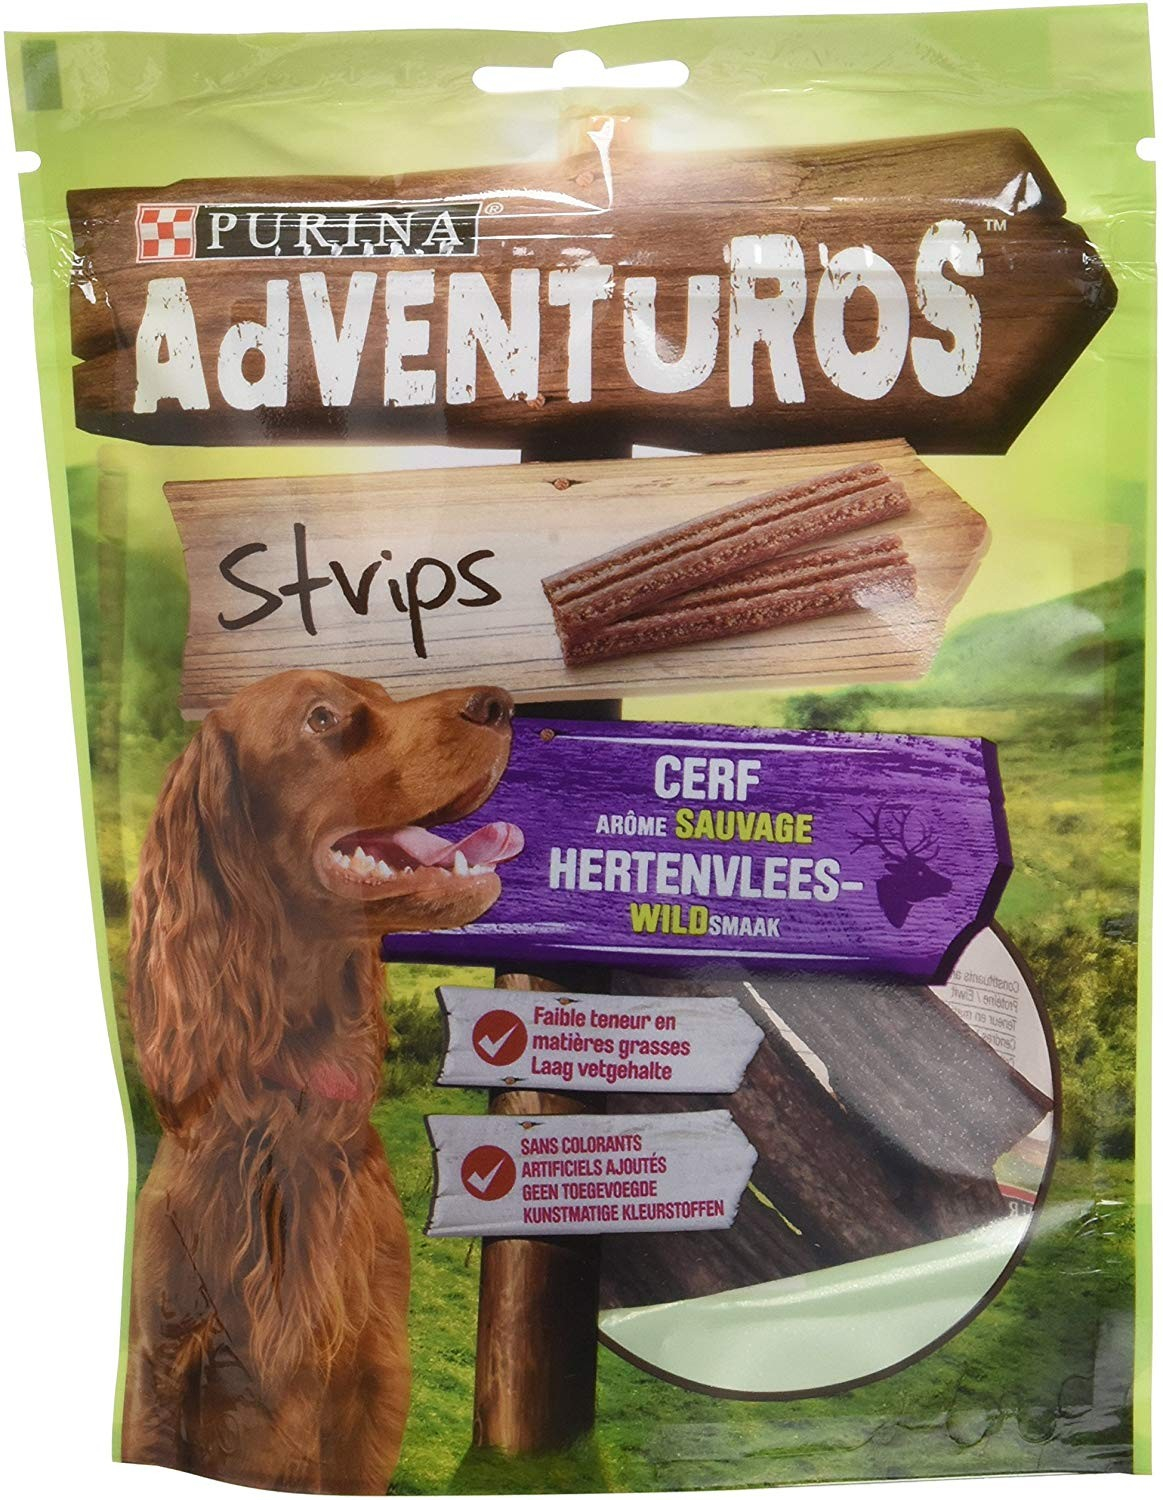 Guloseimas Adventuros Strips Savores Veado selvagem para cão